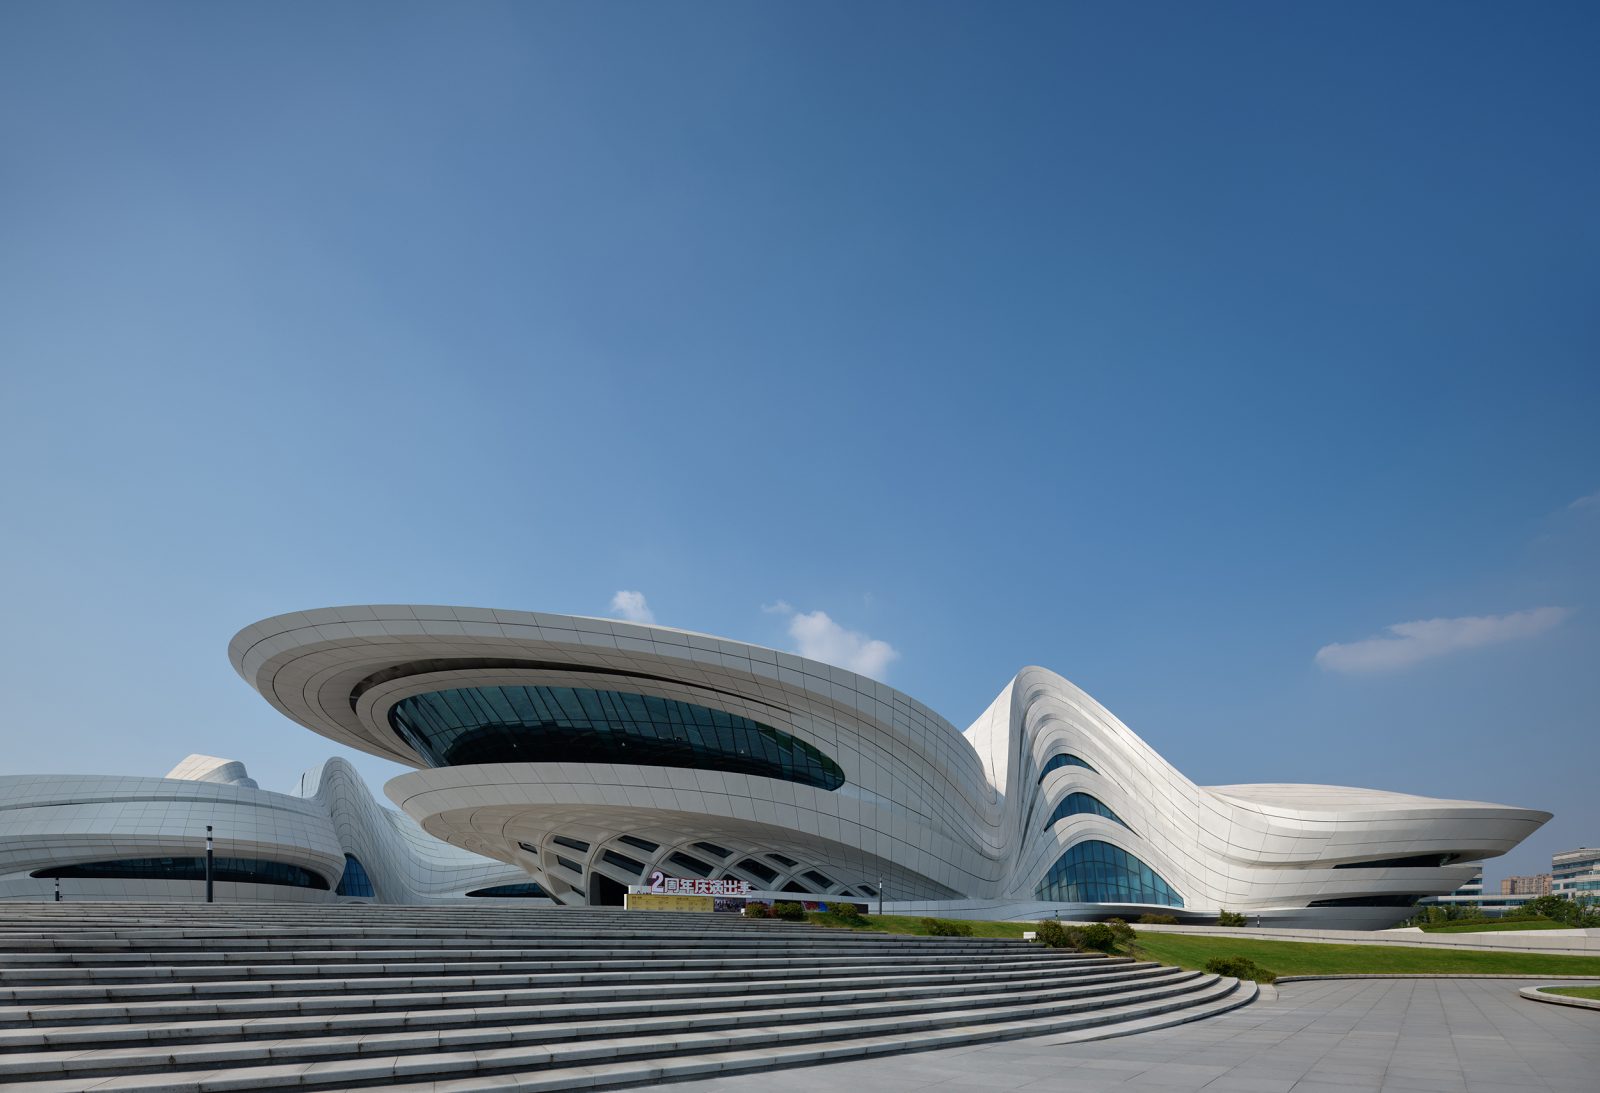 New China culture Center by Zaha Hadid Architects